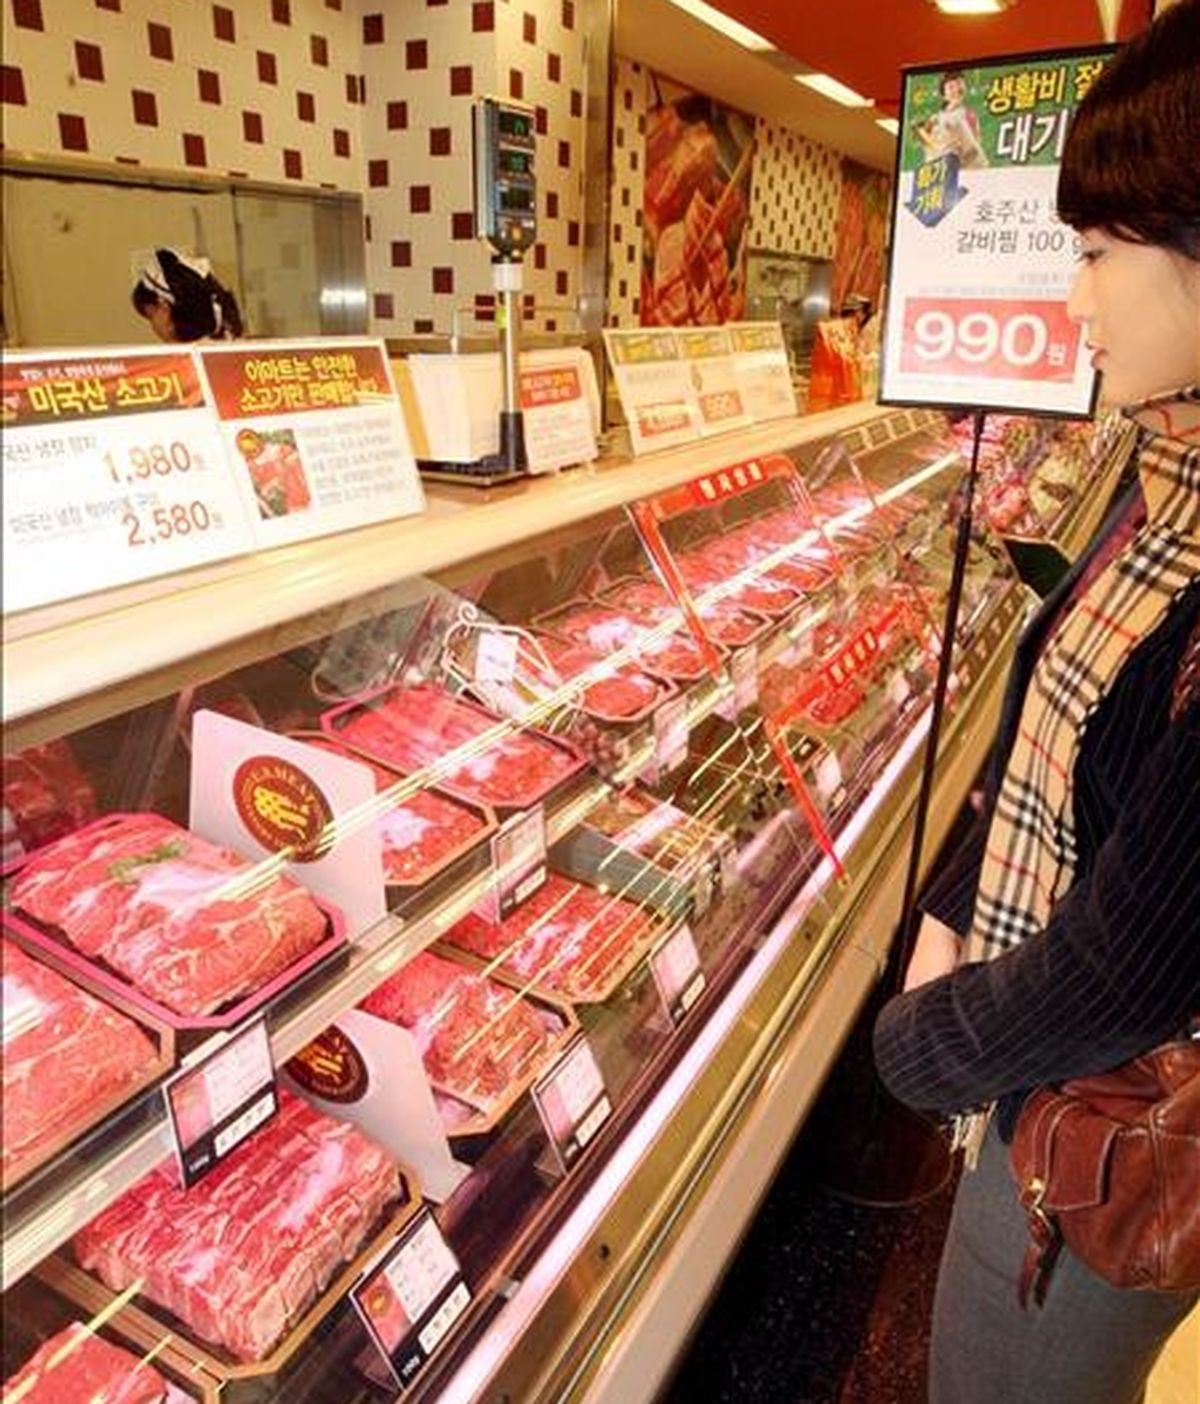 Una compradora observa bandejas con carne en un supermercado. EFE/Archivo